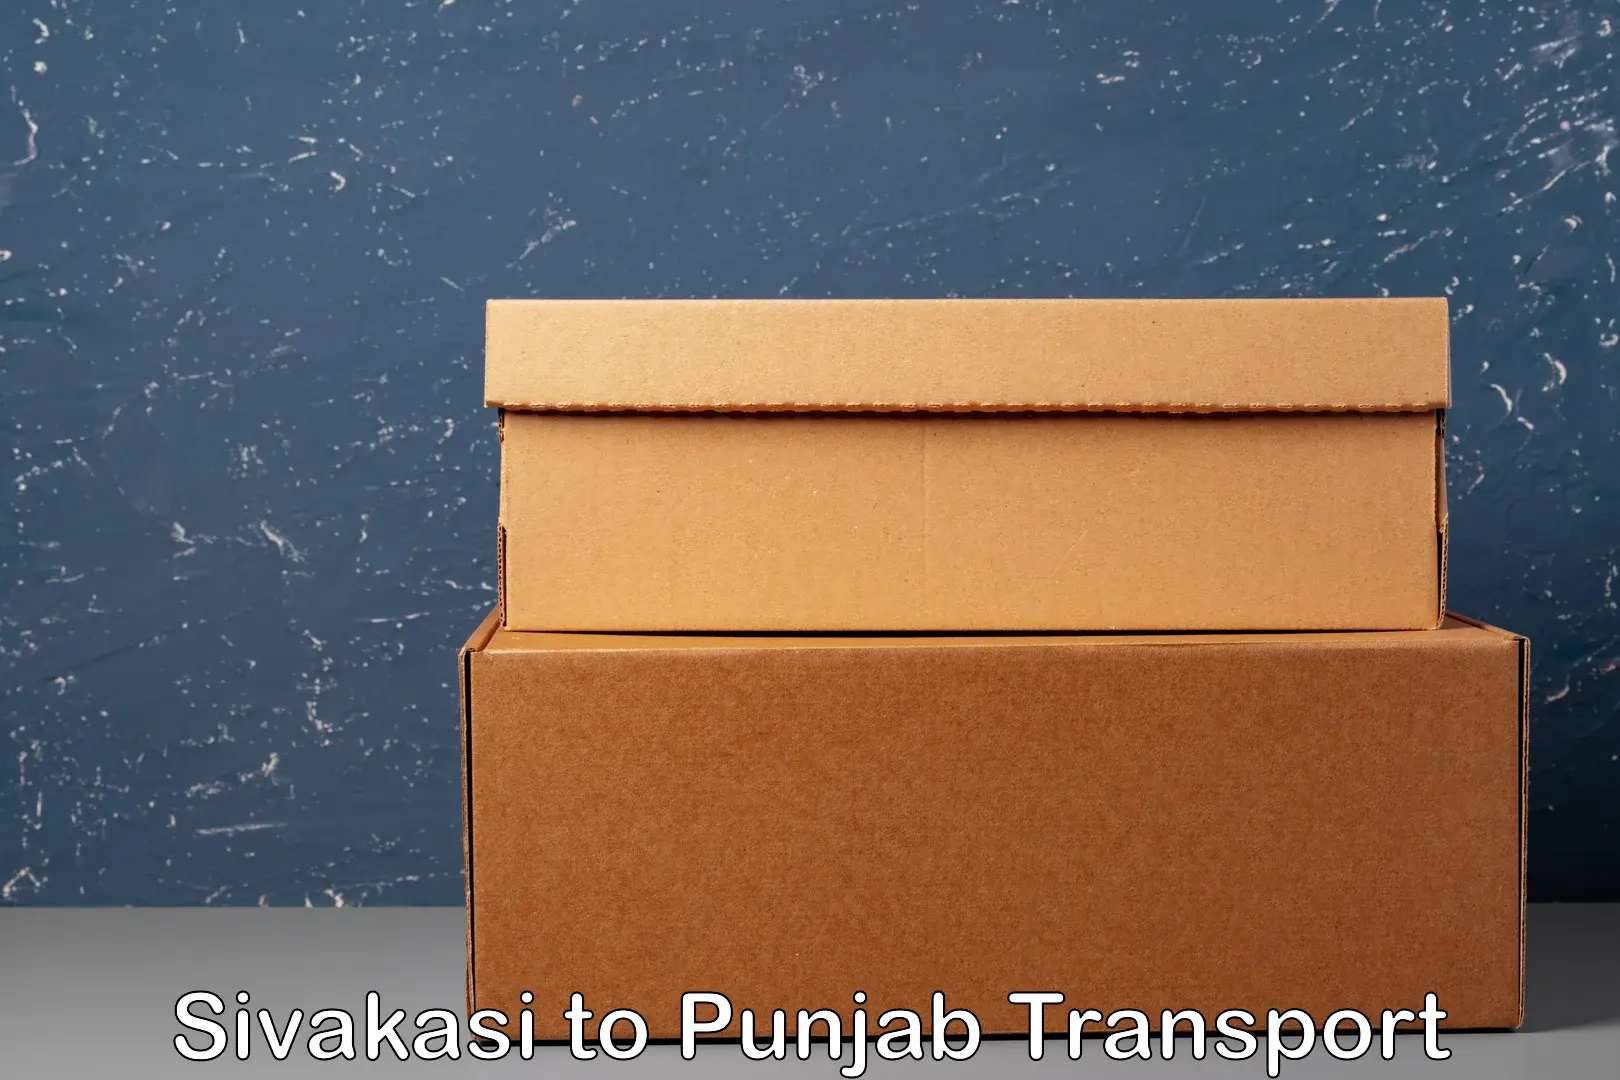 International cargo transportation services Sivakasi to Talwara